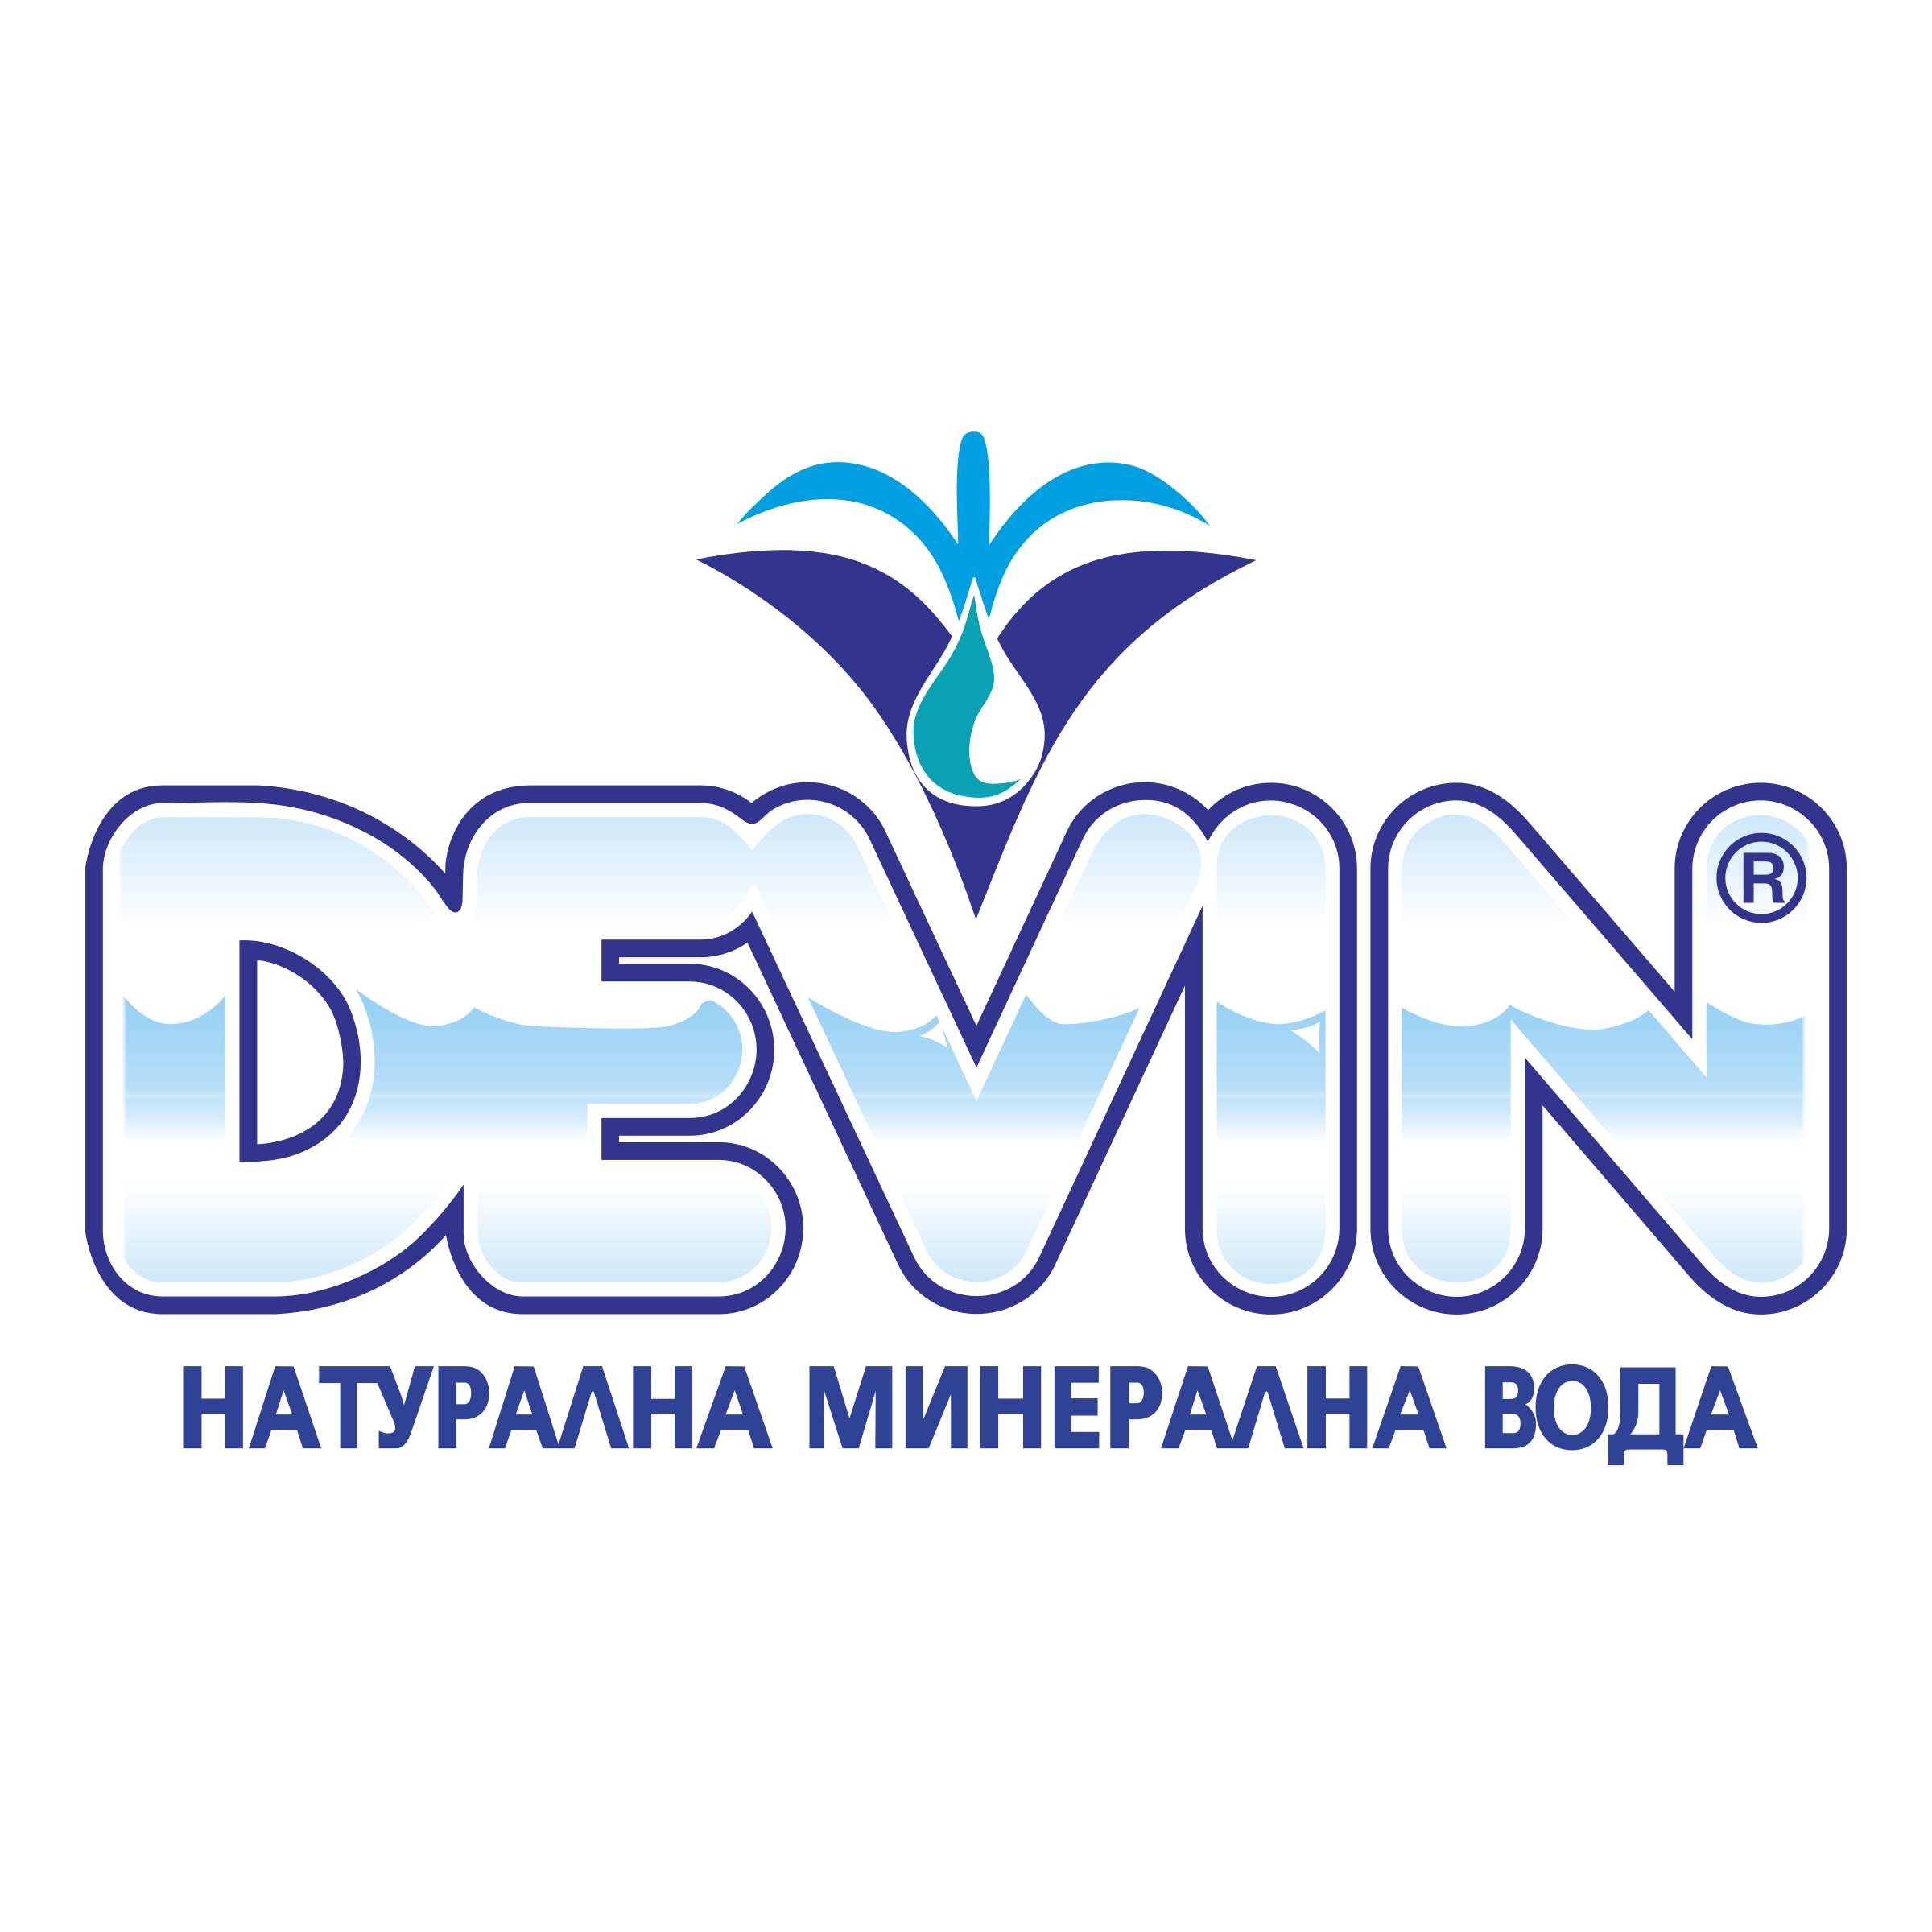 Devin Logo - Devin Logo PNG Transparent & SVG Vector - Freebie Supply